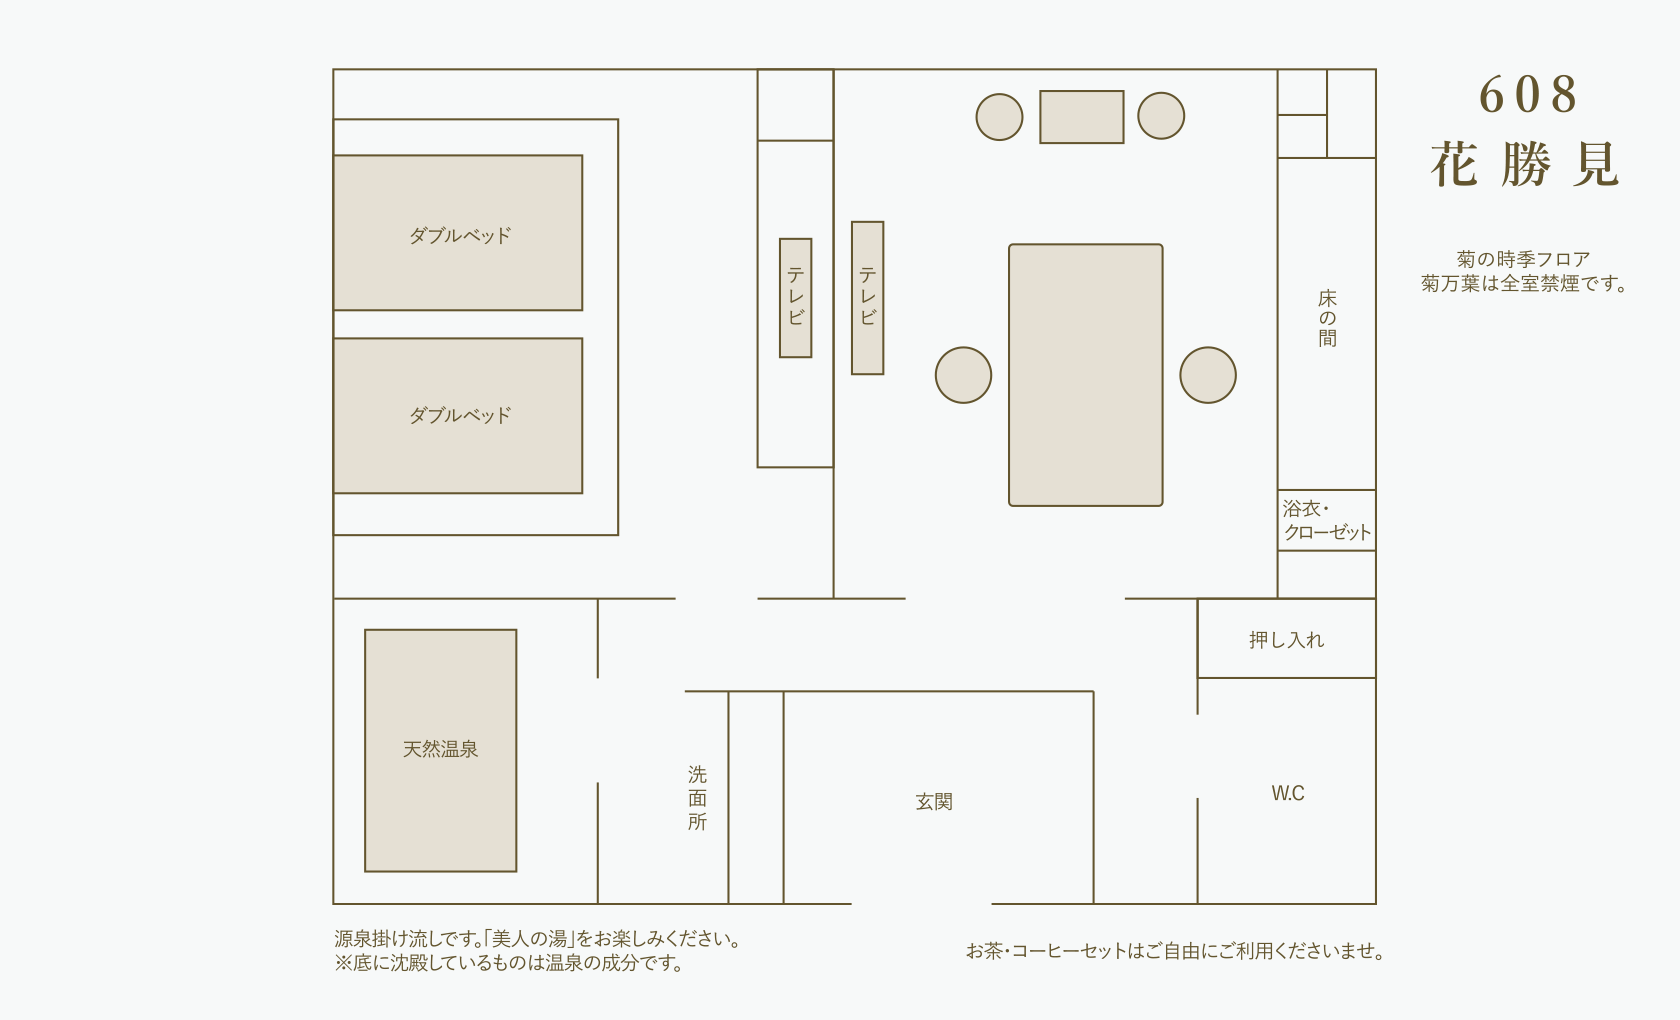 Hanakatsumi  layout